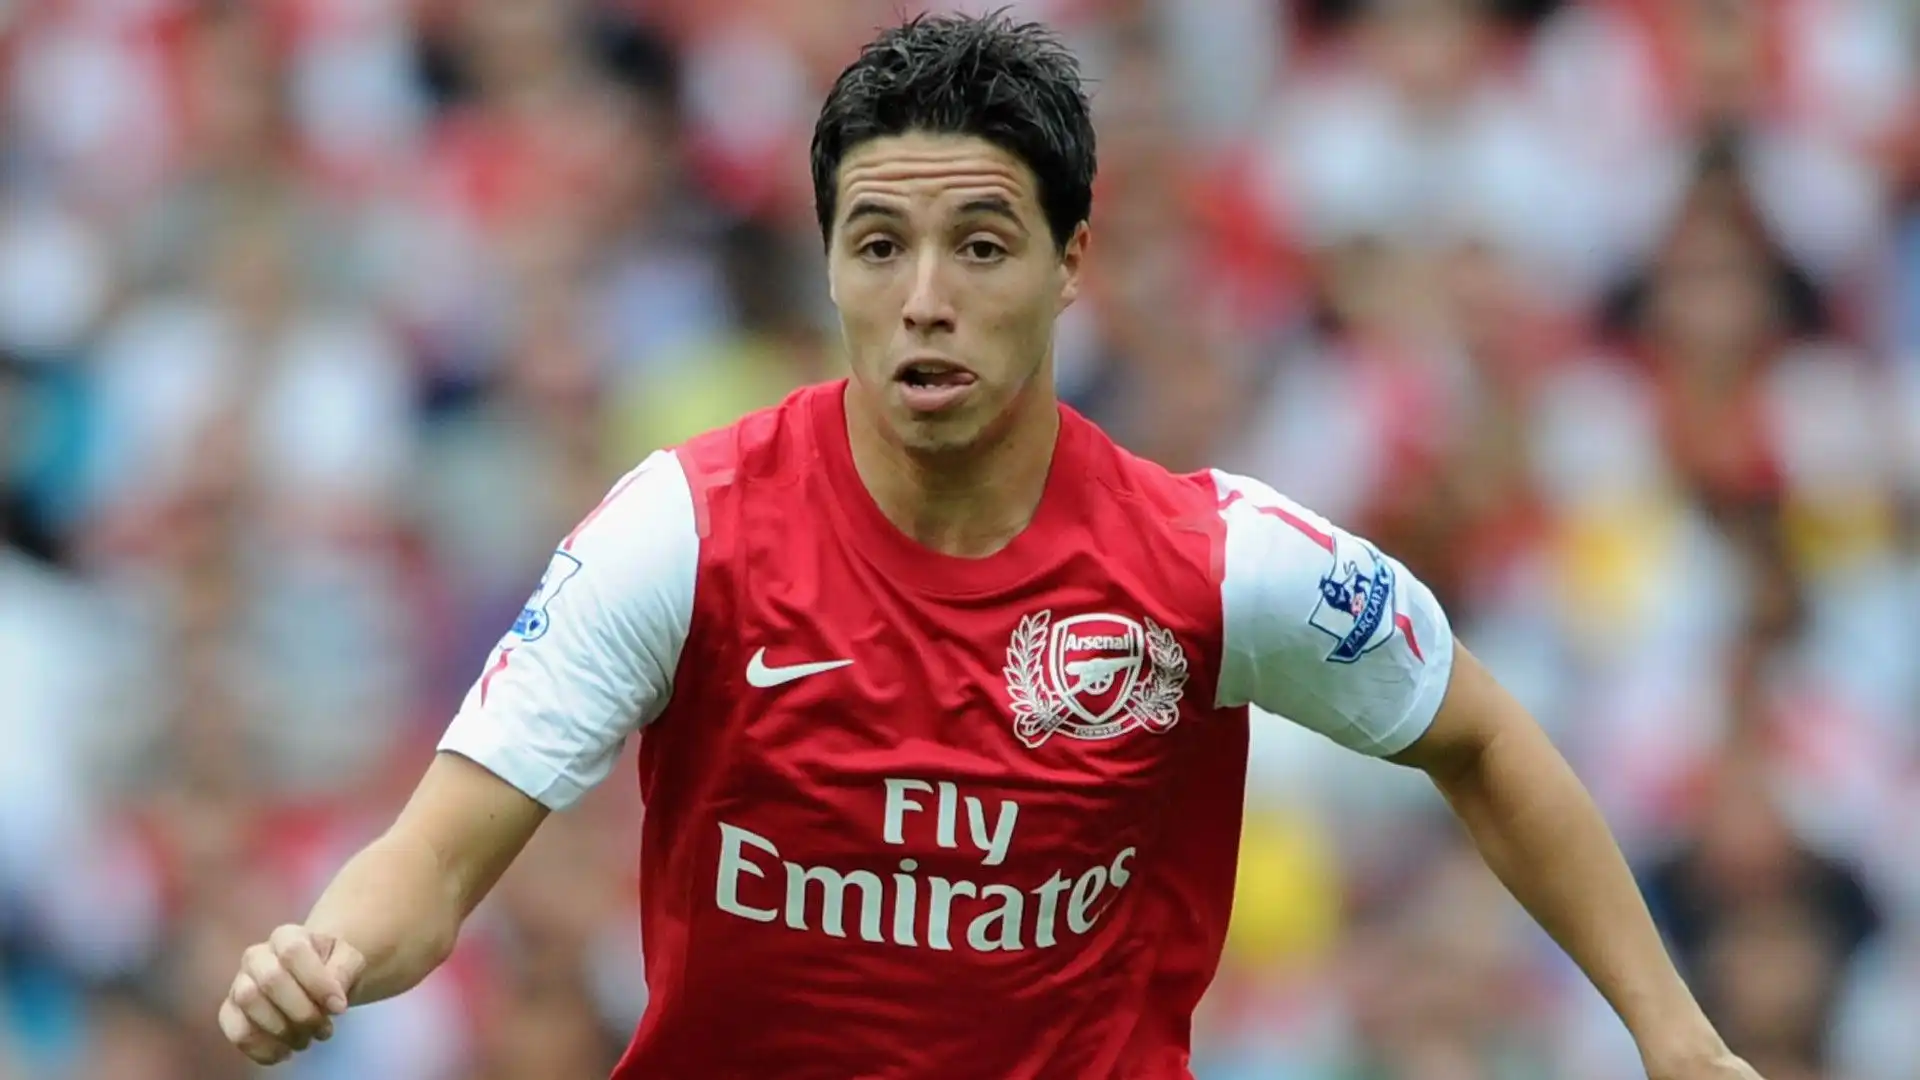 Dal 2008 al 2011, invece, ha giocato per l'Arsenal